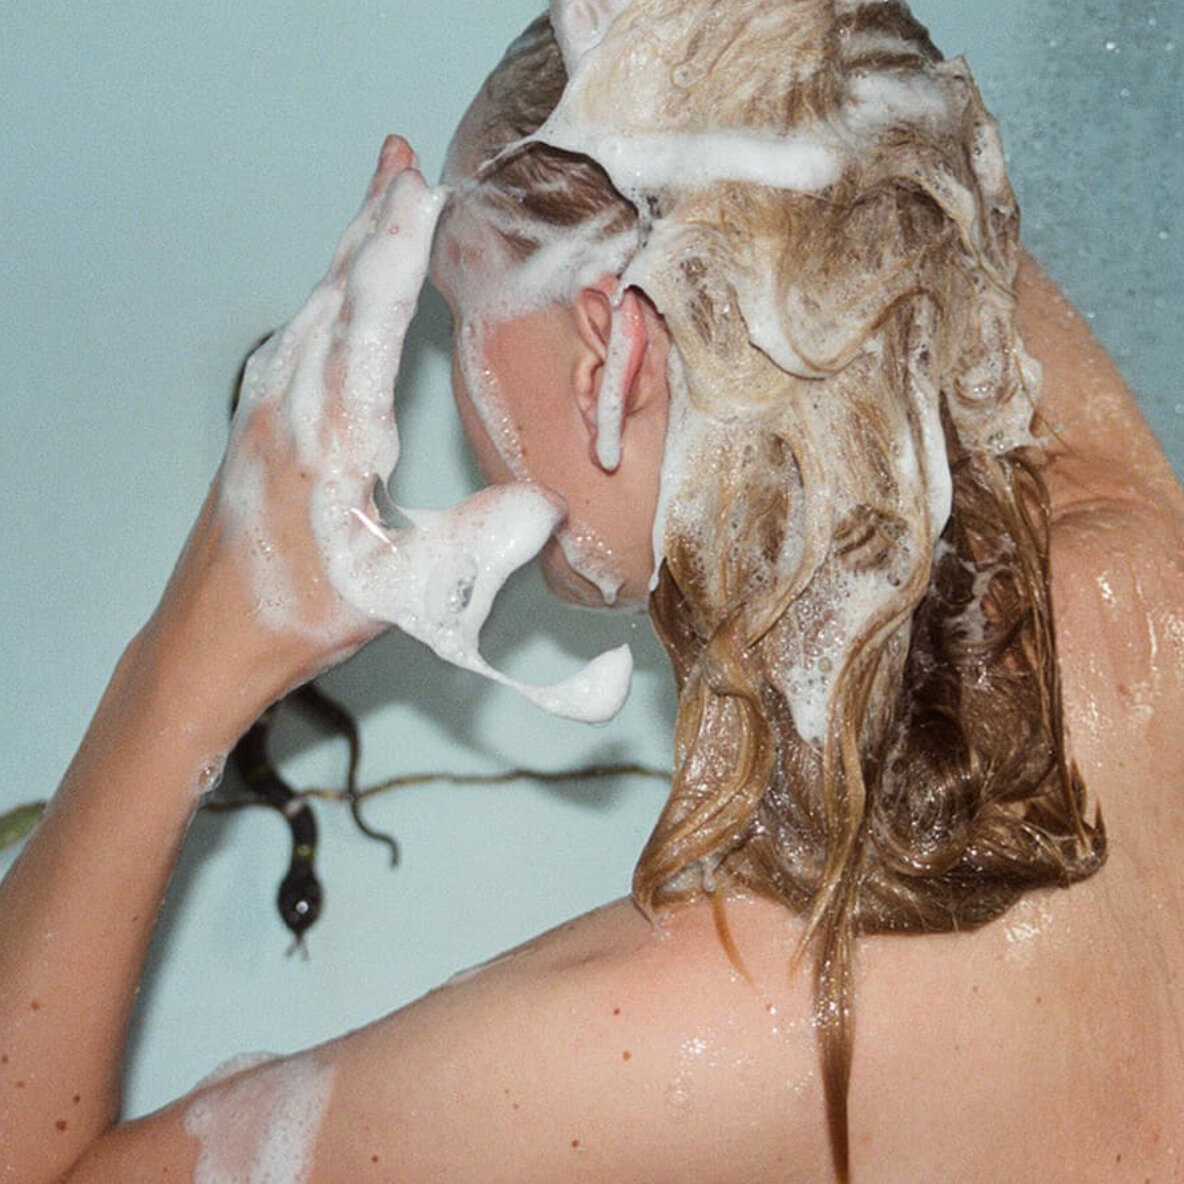   Пугающие отзывы о том, что волосы чуть ли не пучками остаются в ванной после определенных видов шампуня, обычно вызывают недоверчивую ухмылку у адекватных людей.-2